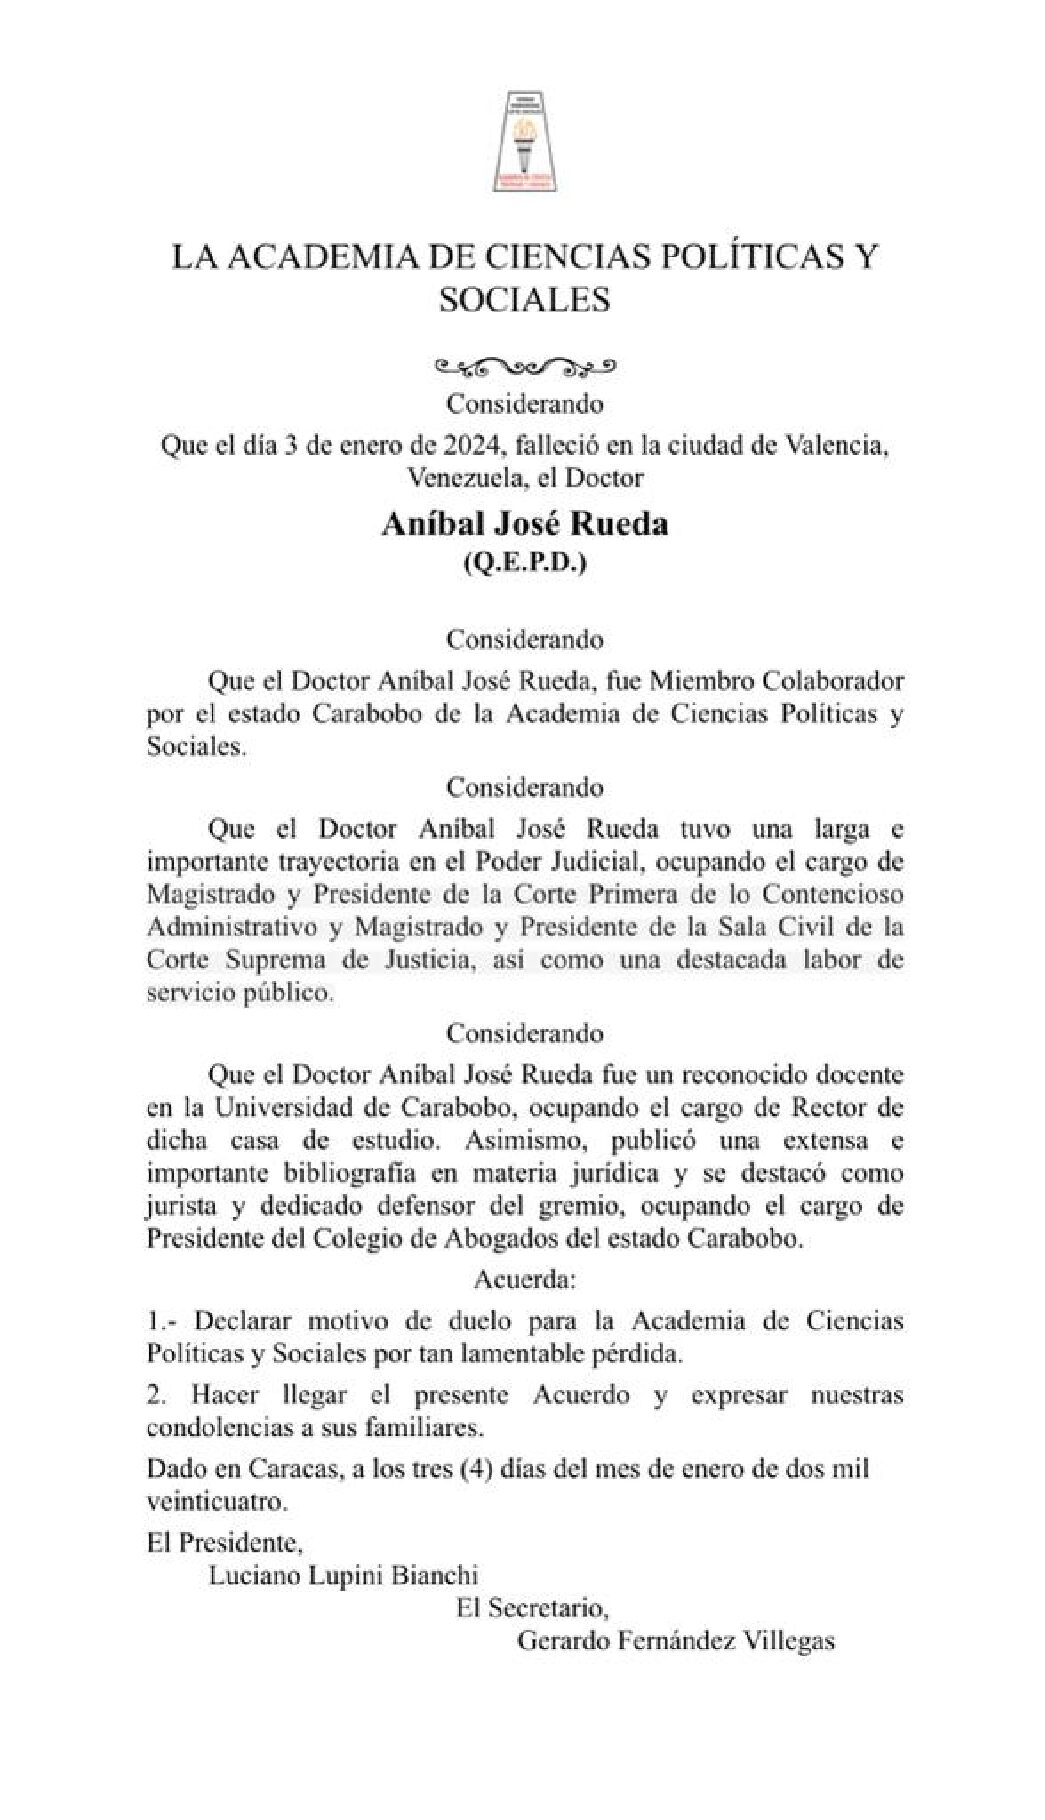 Acuerdo de duelo de la Academia de Ciencias Políticas y Sociales por el lamentable fallecimiento del Dr. ANÍBAL JOSÉ RUEDA